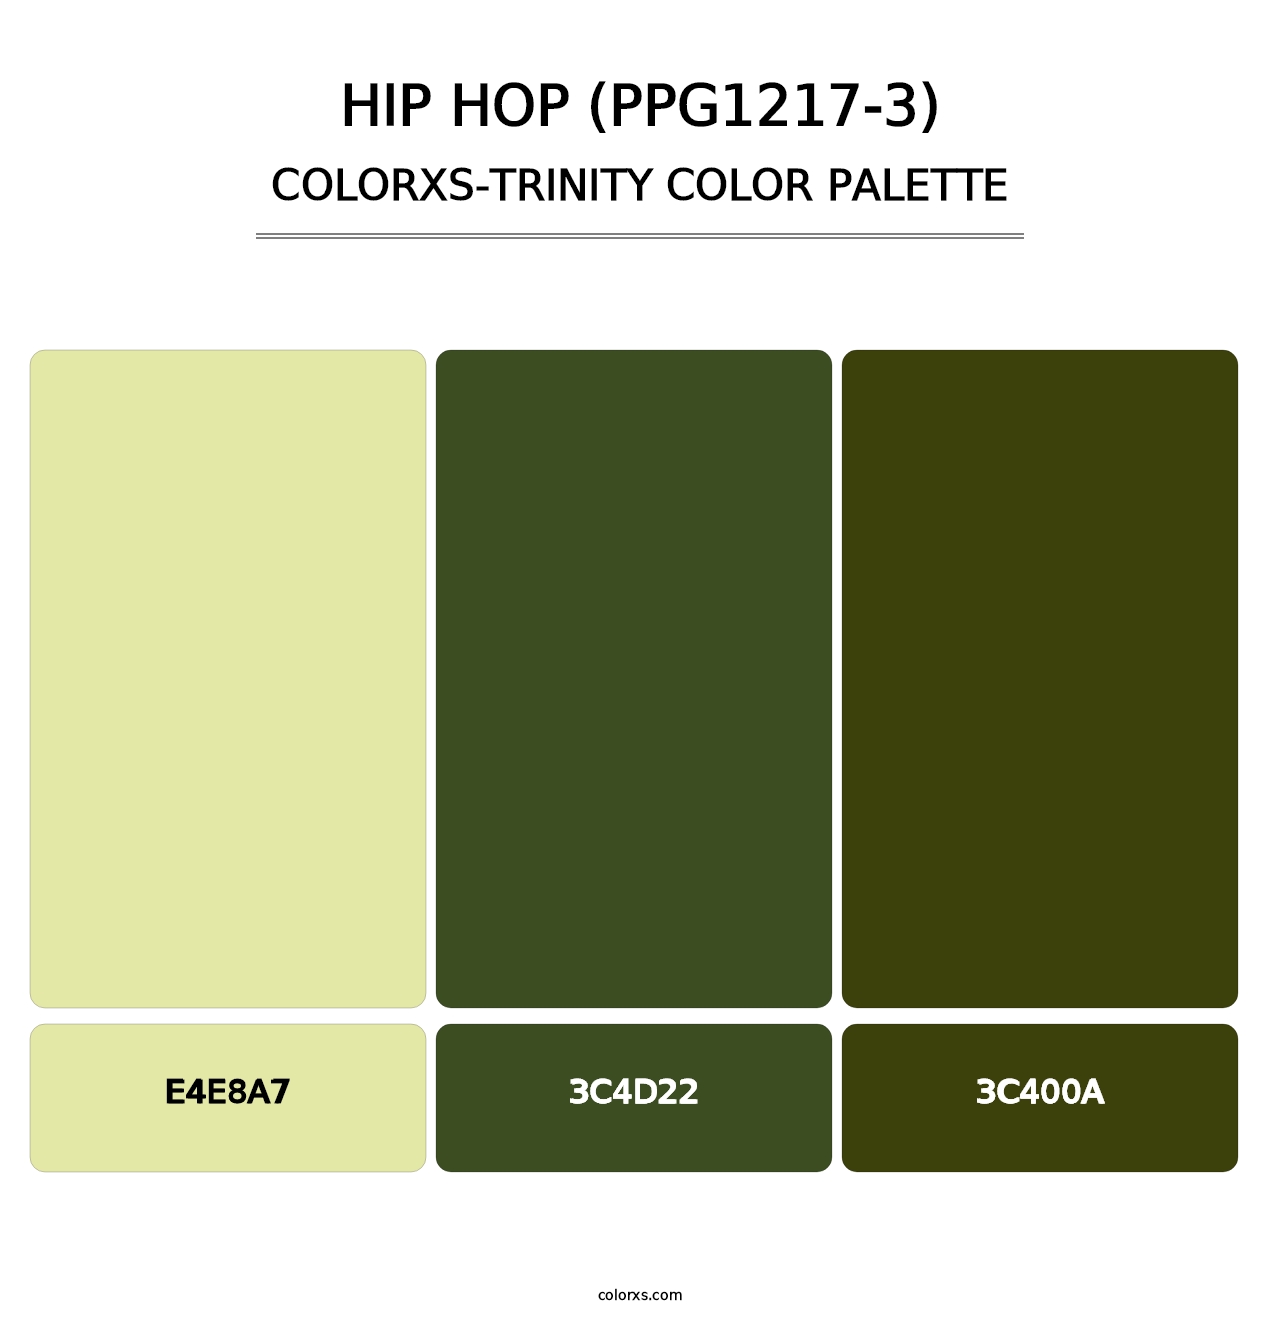 Hip Hop (PPG1217-3) - Colorxs Trinity Palette